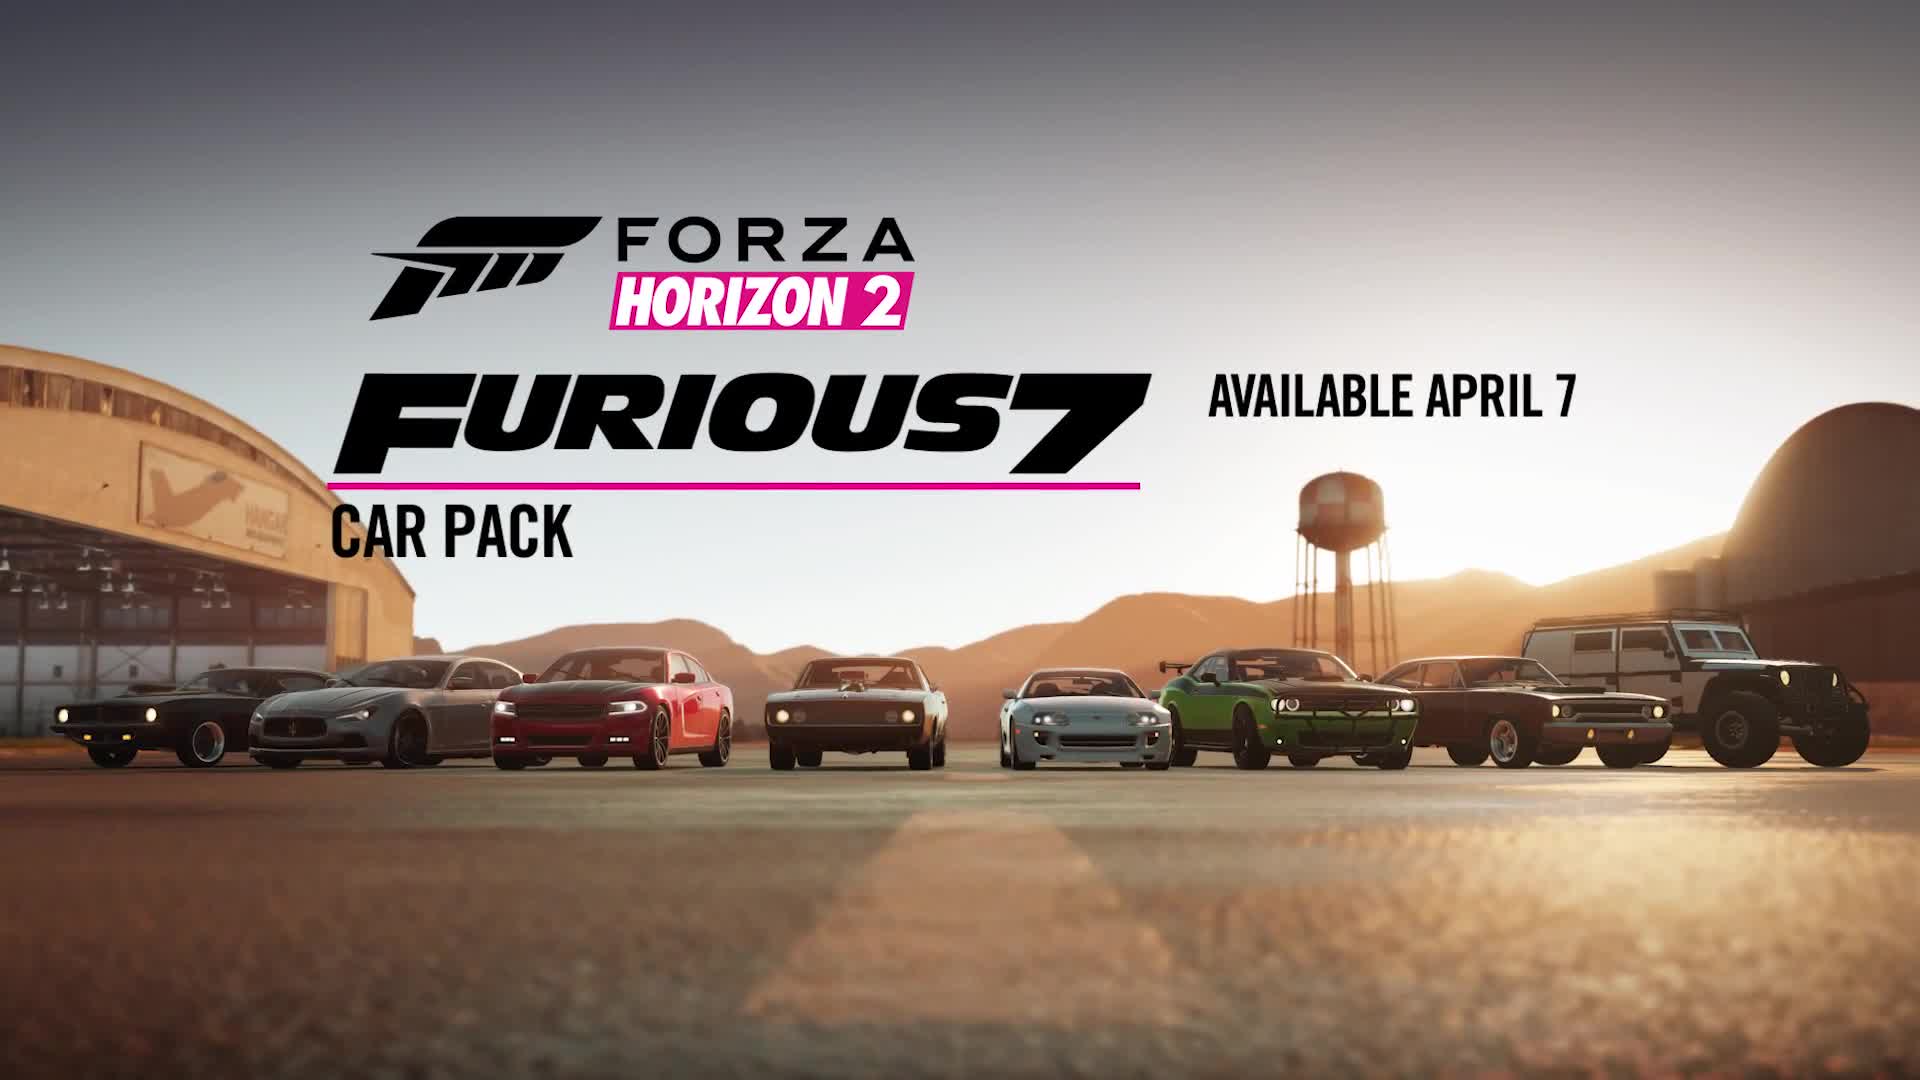 Forza Horizon 2 - Furious 7 DLC pack